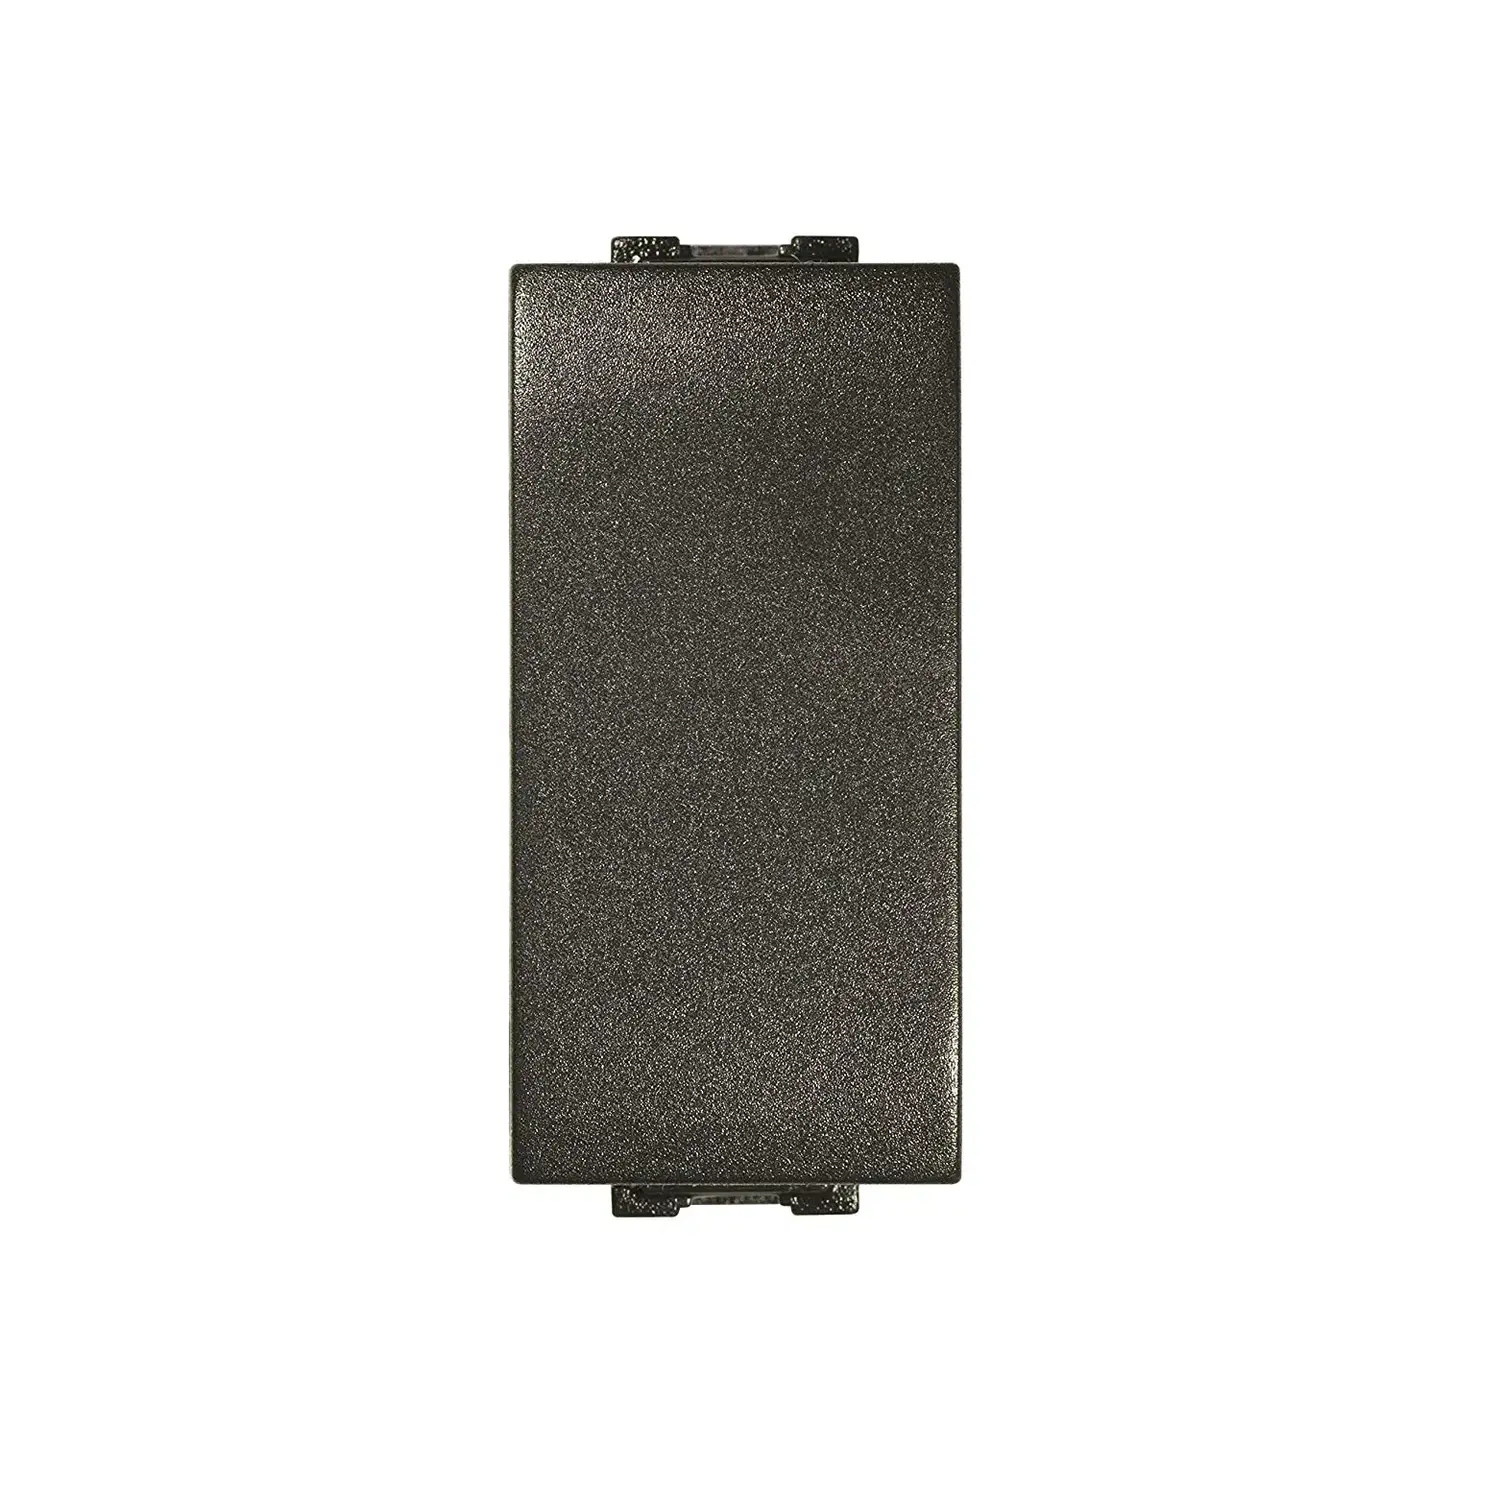 immagine del prodotto invertitore elettrico compatibile living light 16a serie civile feb flexi nero